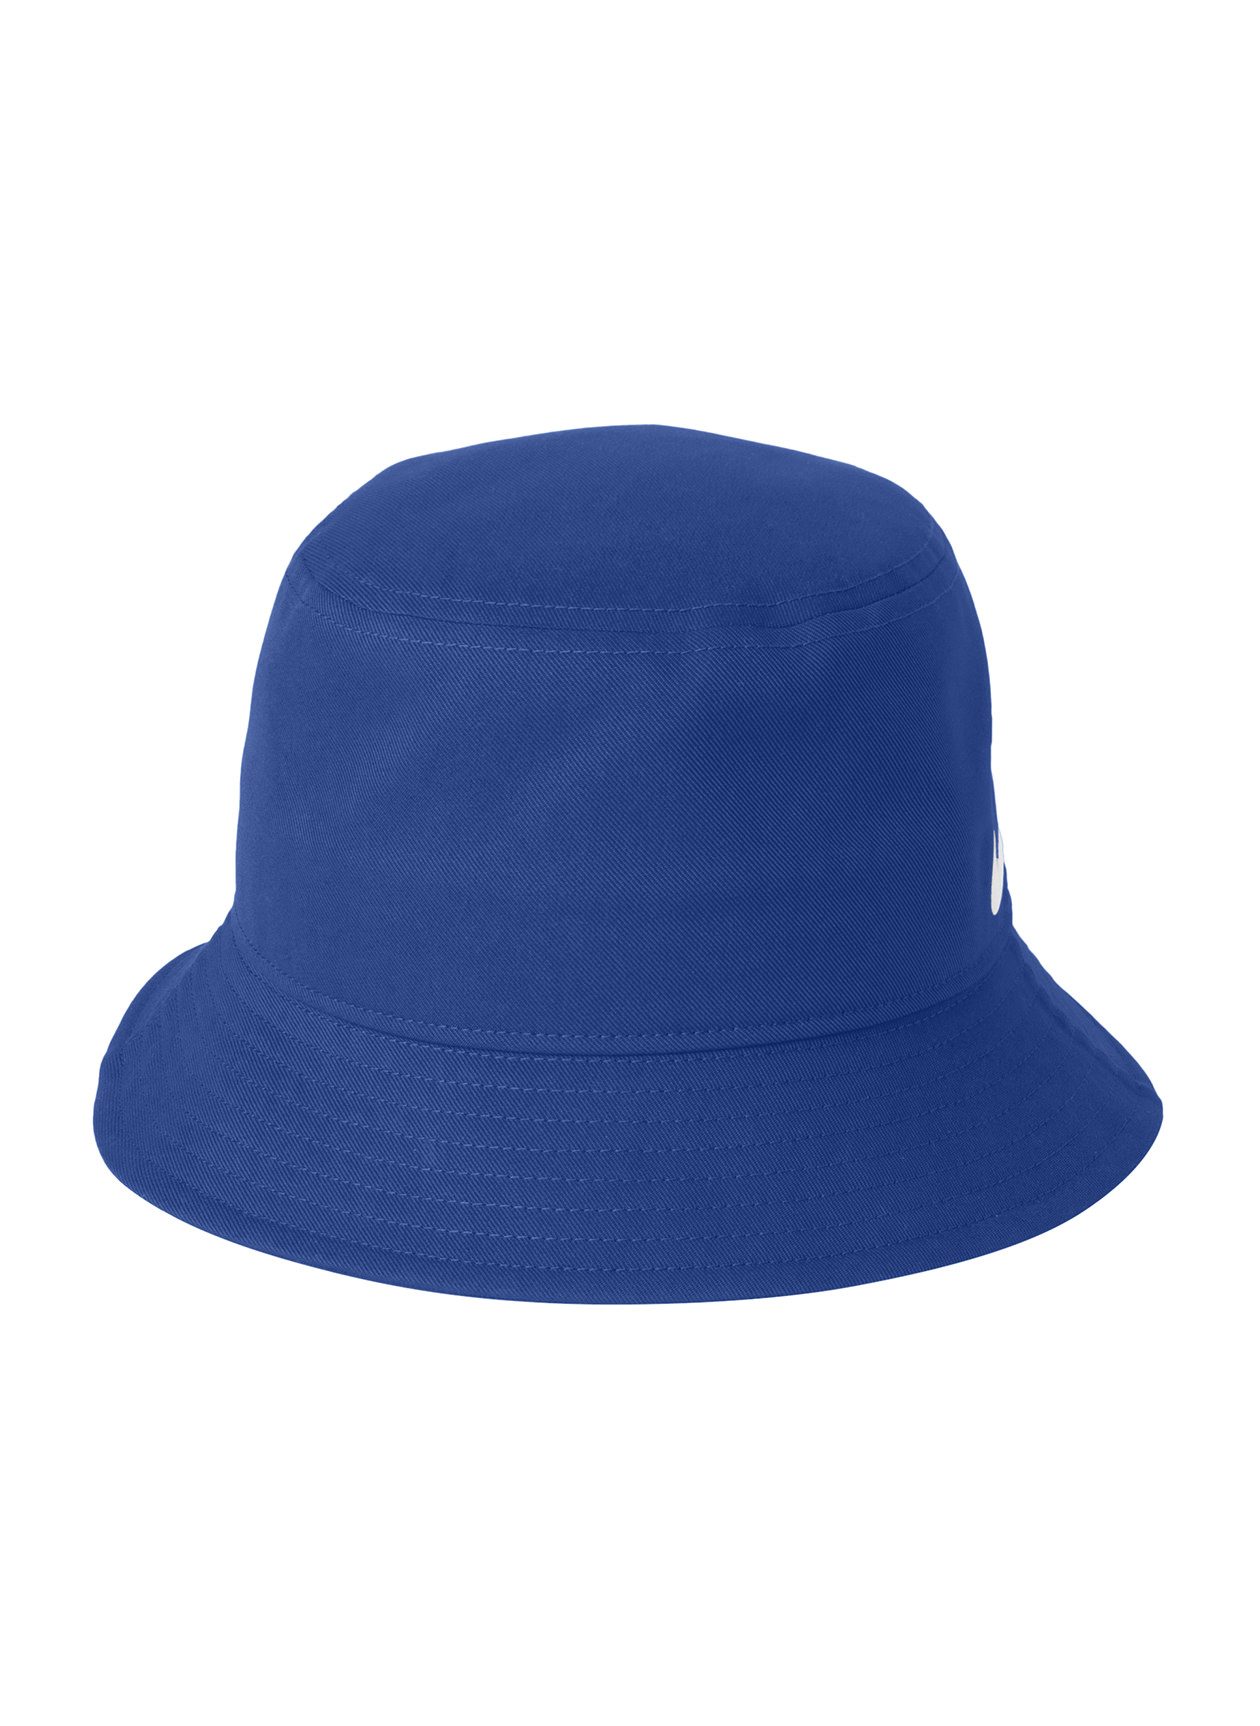 Nike - Swoosh Bucket Hat. NKBFN6319